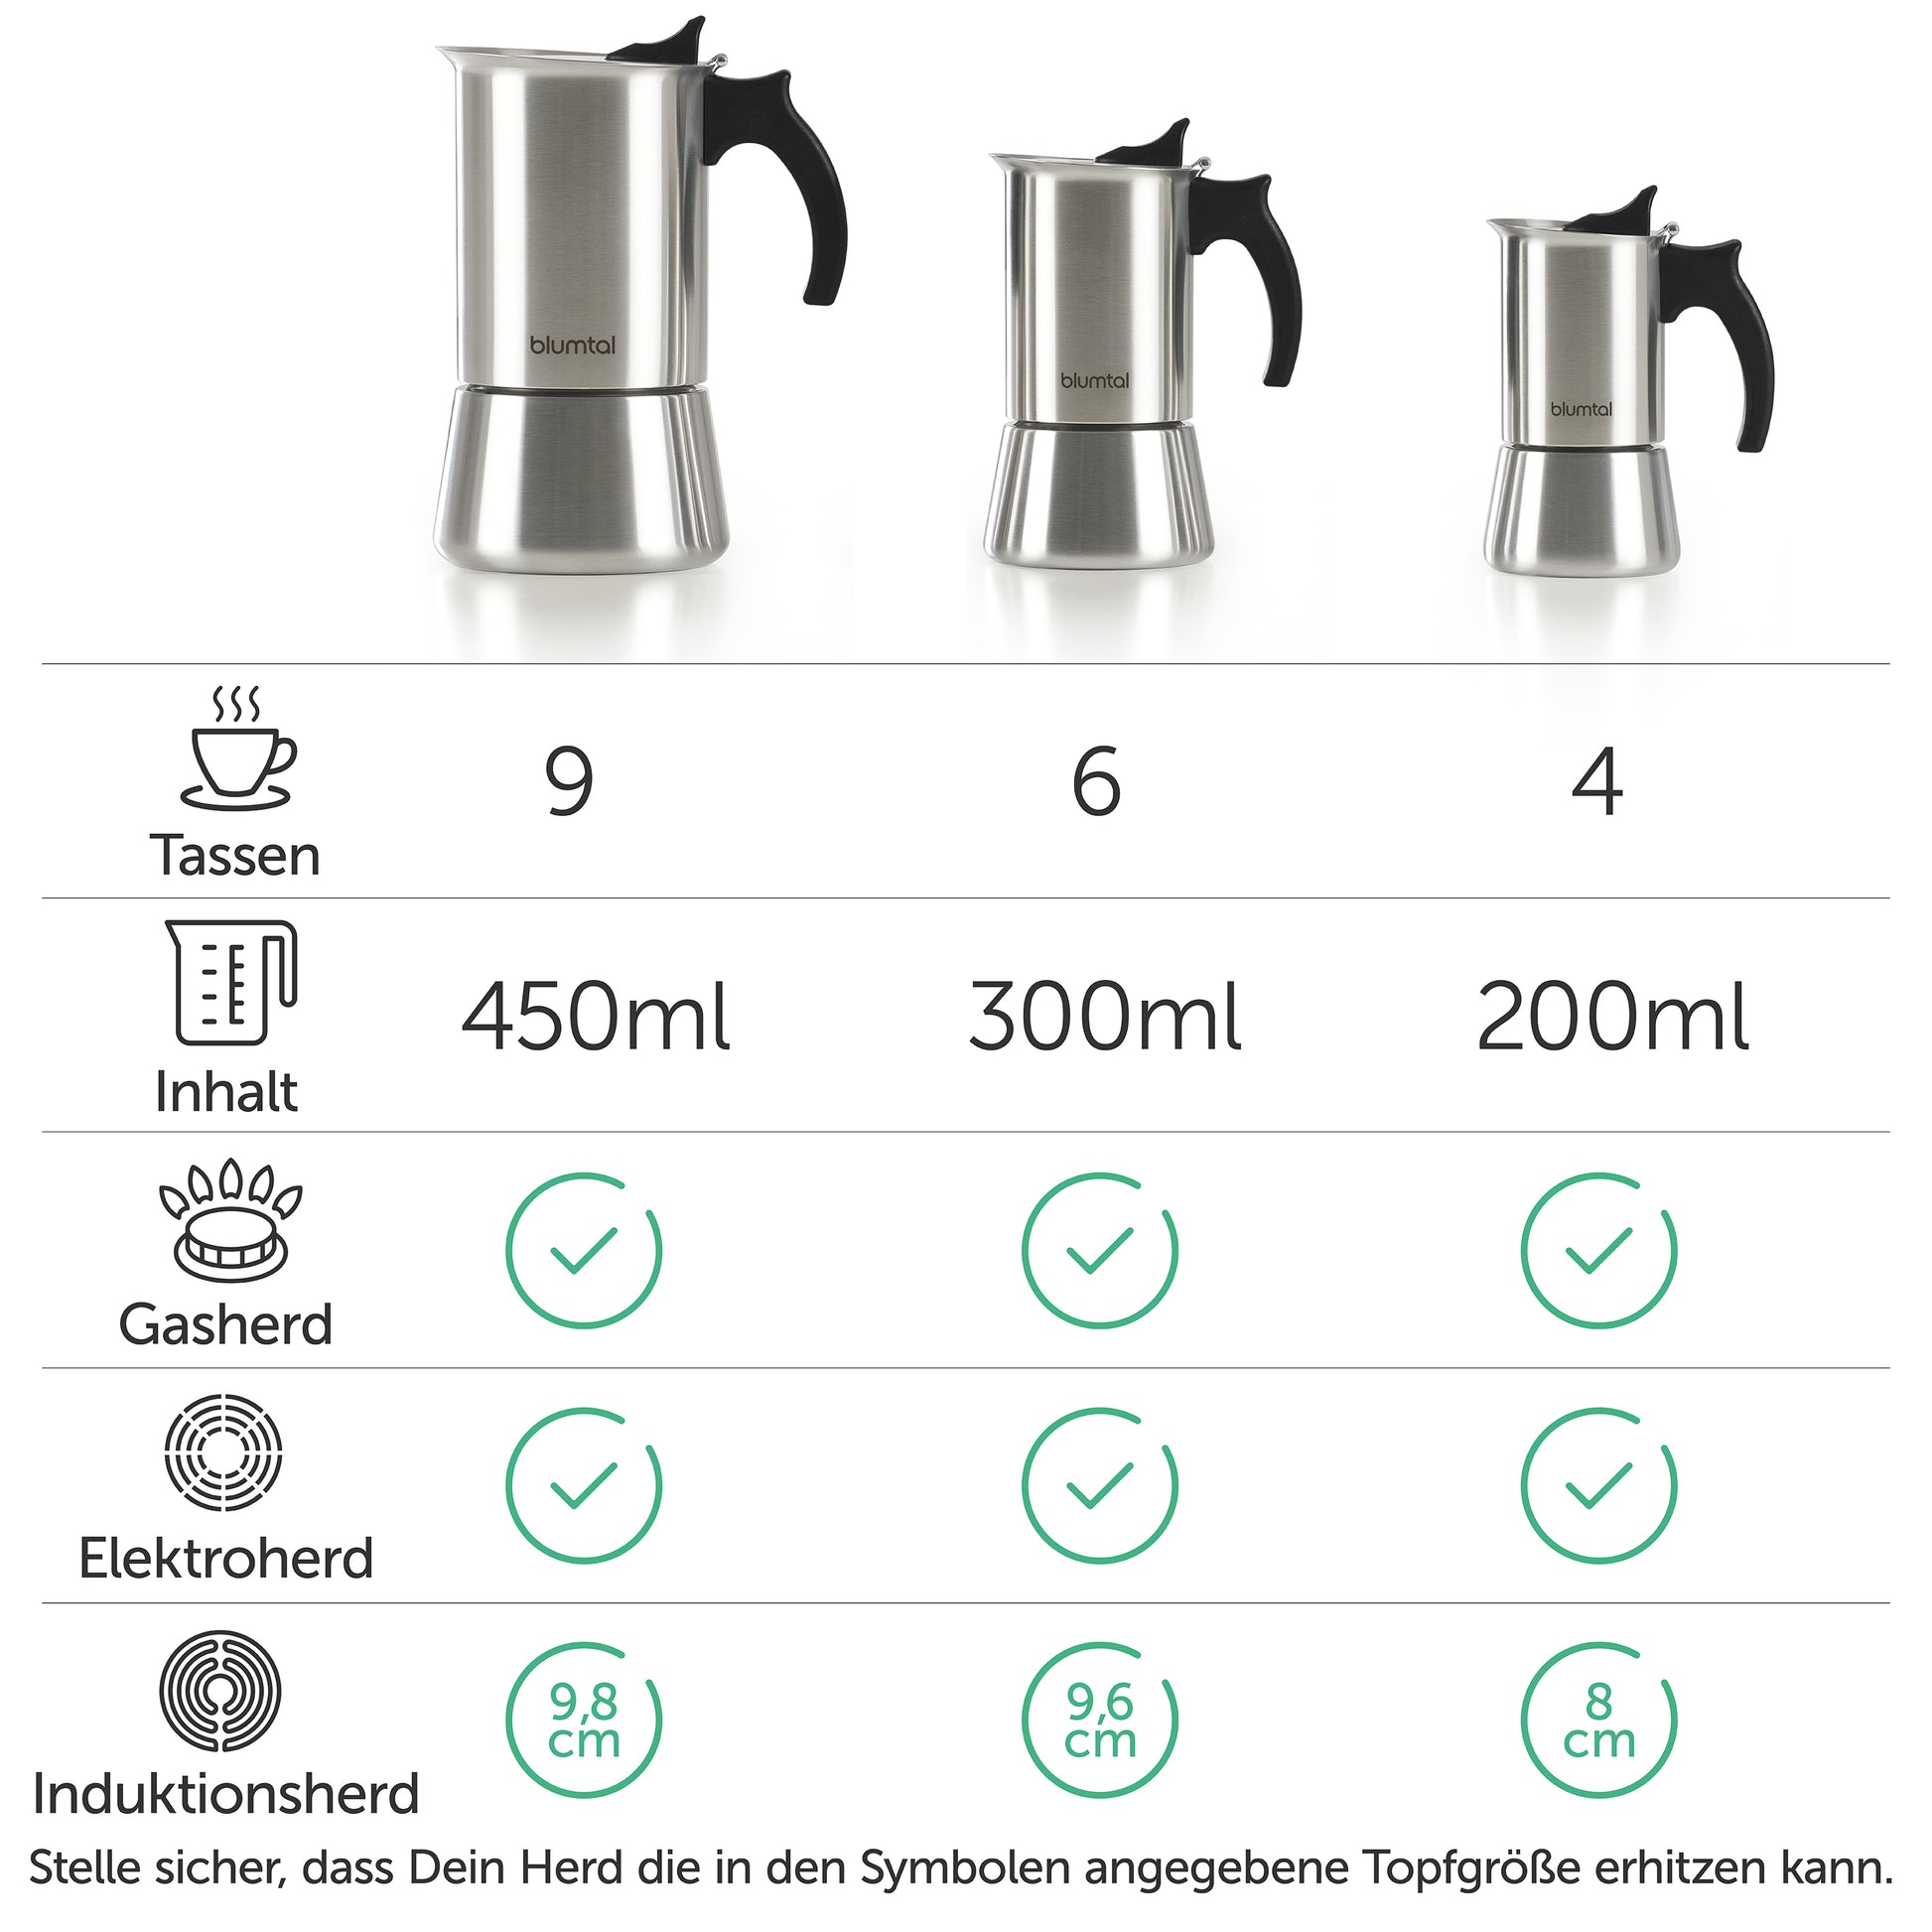 Drei Größen von Espressokochern mit Angaben zu Tassenanzahl und Volumen, geeignet für Gas-, Elektro- und Induktionsherde.